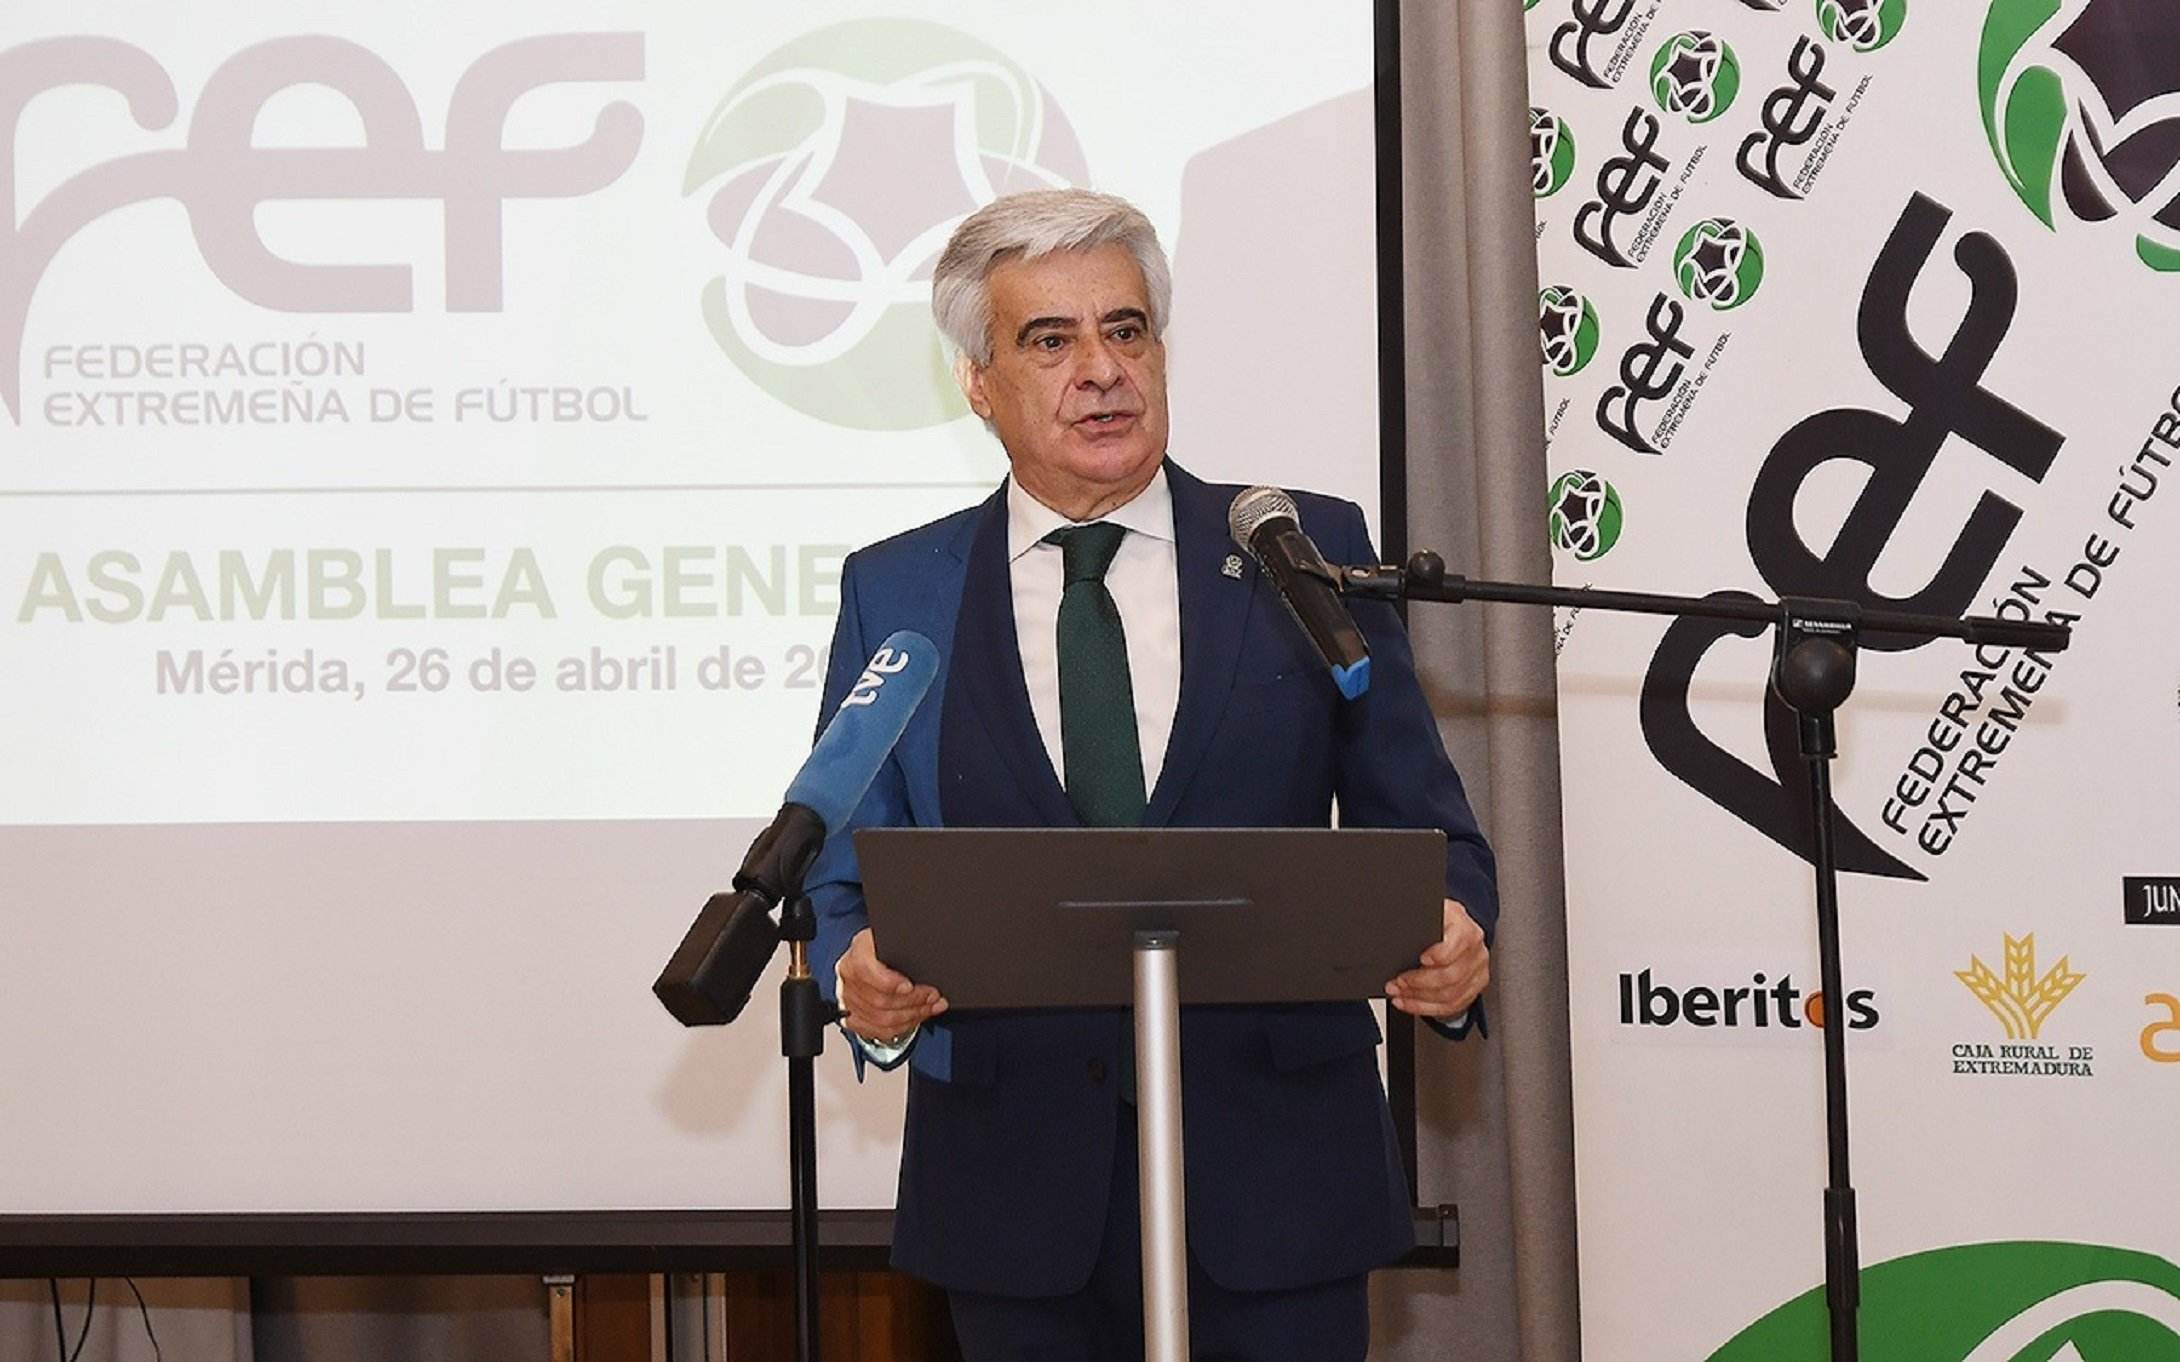 La RFEF ahora pide perdón "al mundo del fútbol" por el comportamiento de Rubiales